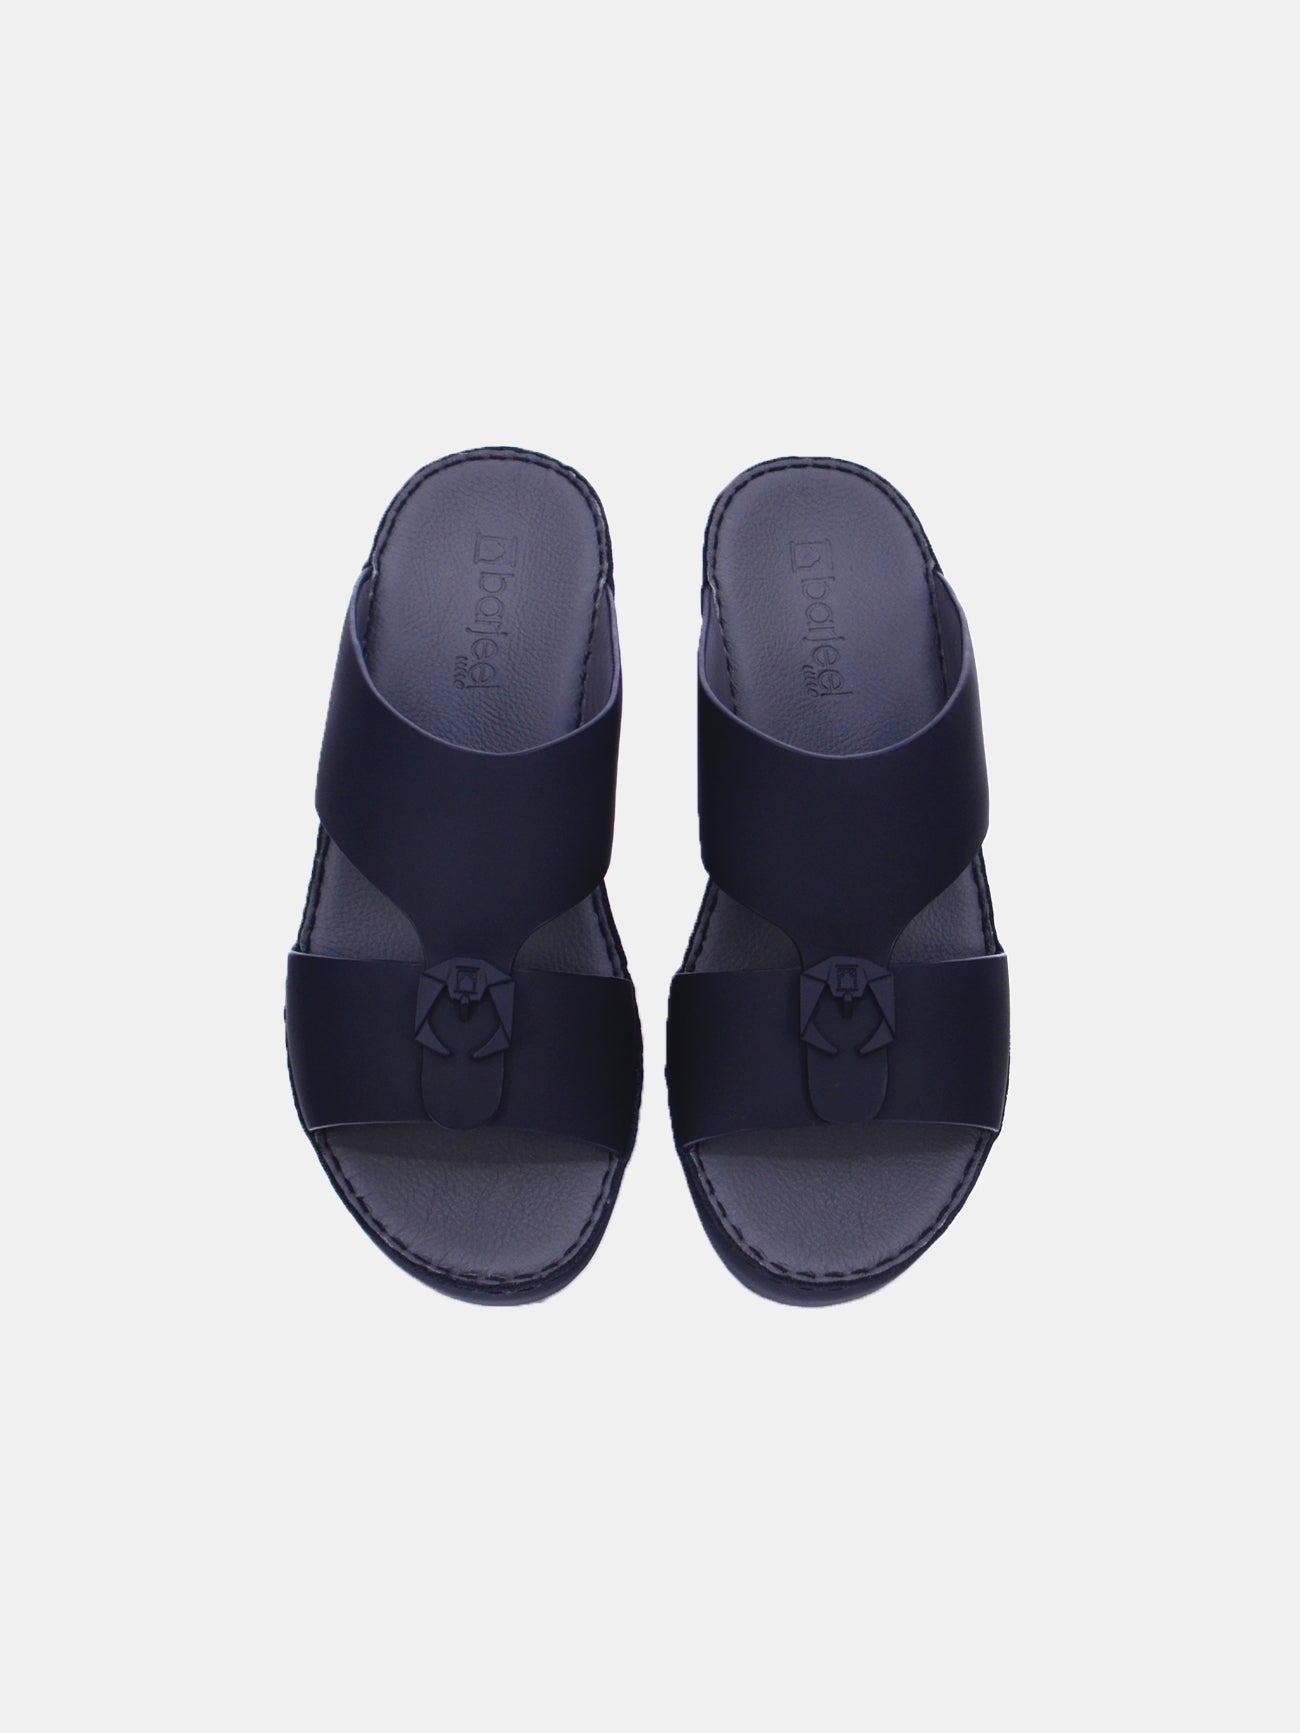 Barjeel Uno Men's Sandals #color_Black